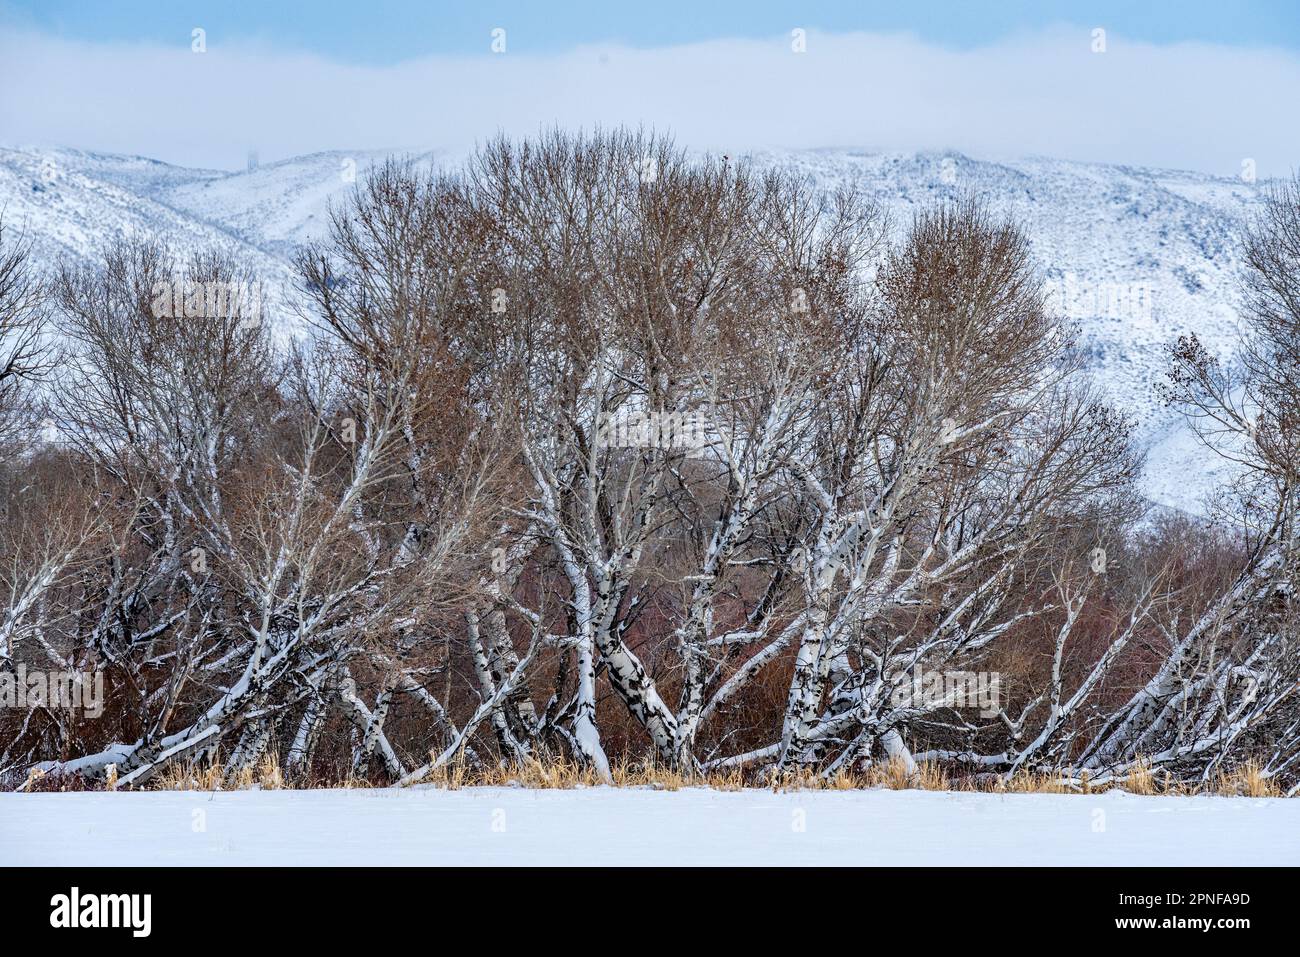 États-Unis, Idaho, Bellevue, bosquet d'arbres en hiver Banque D'Images